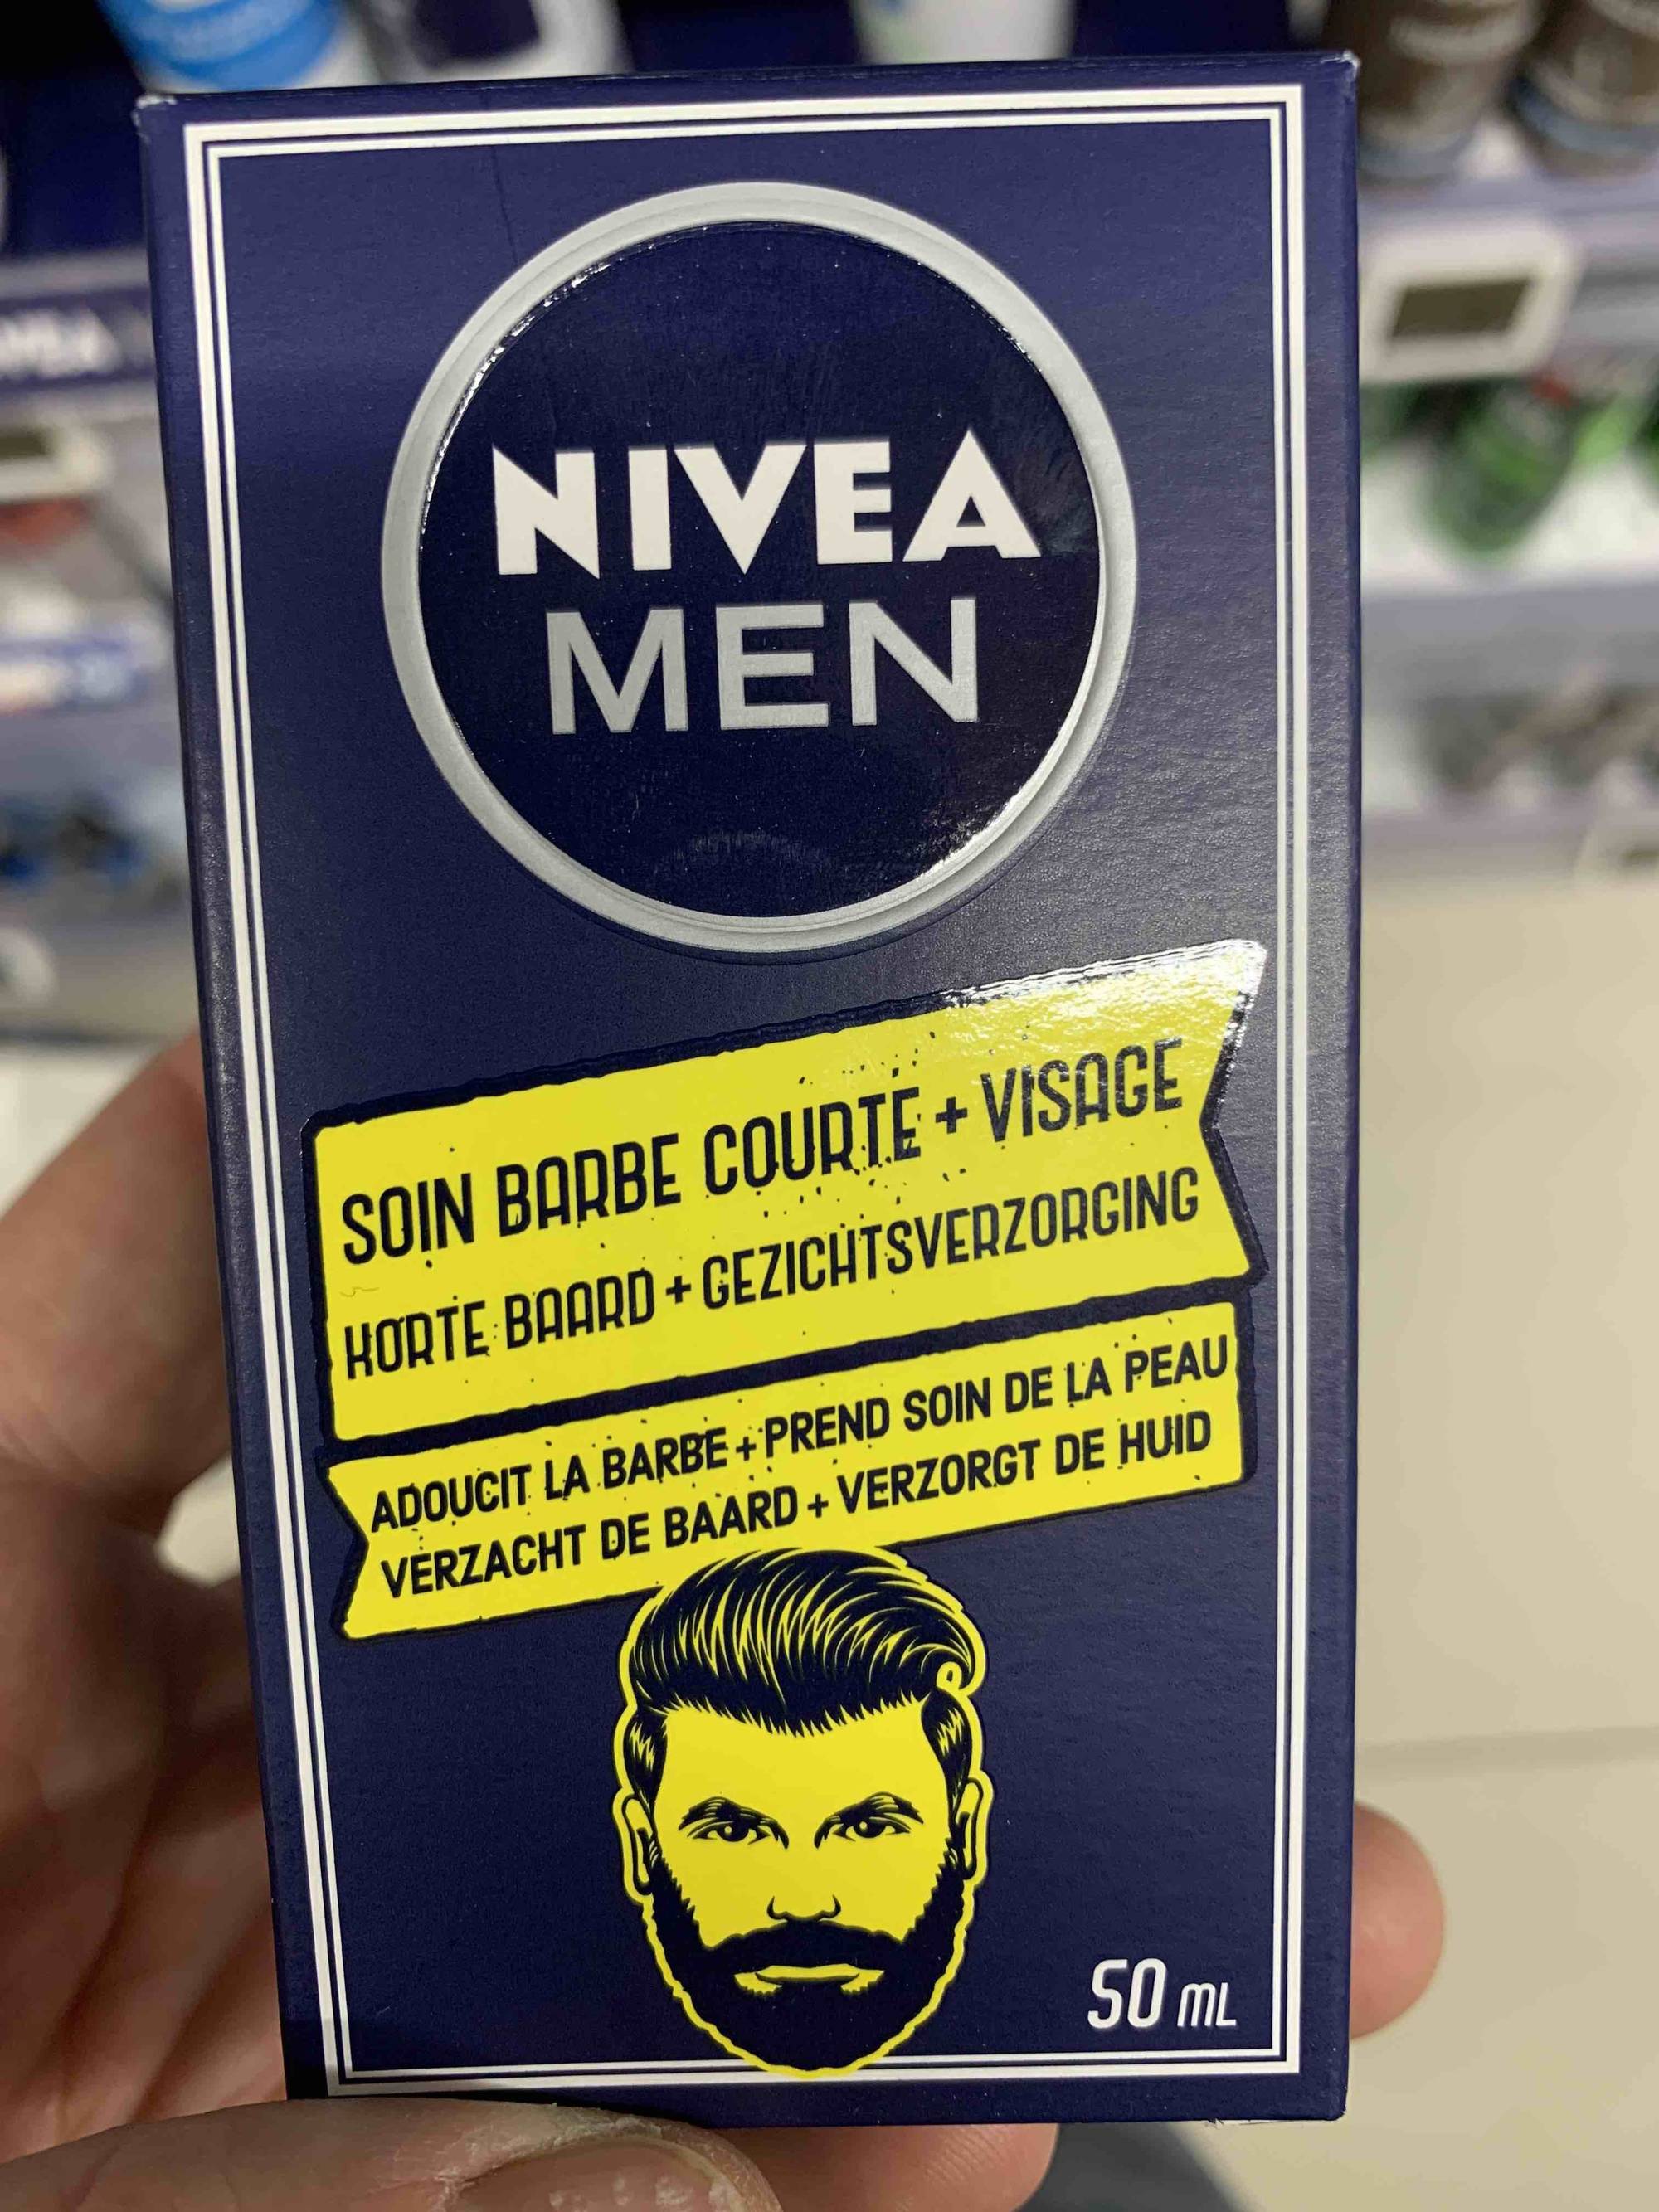 NIVEA - Men - Soin barbe courte + visage